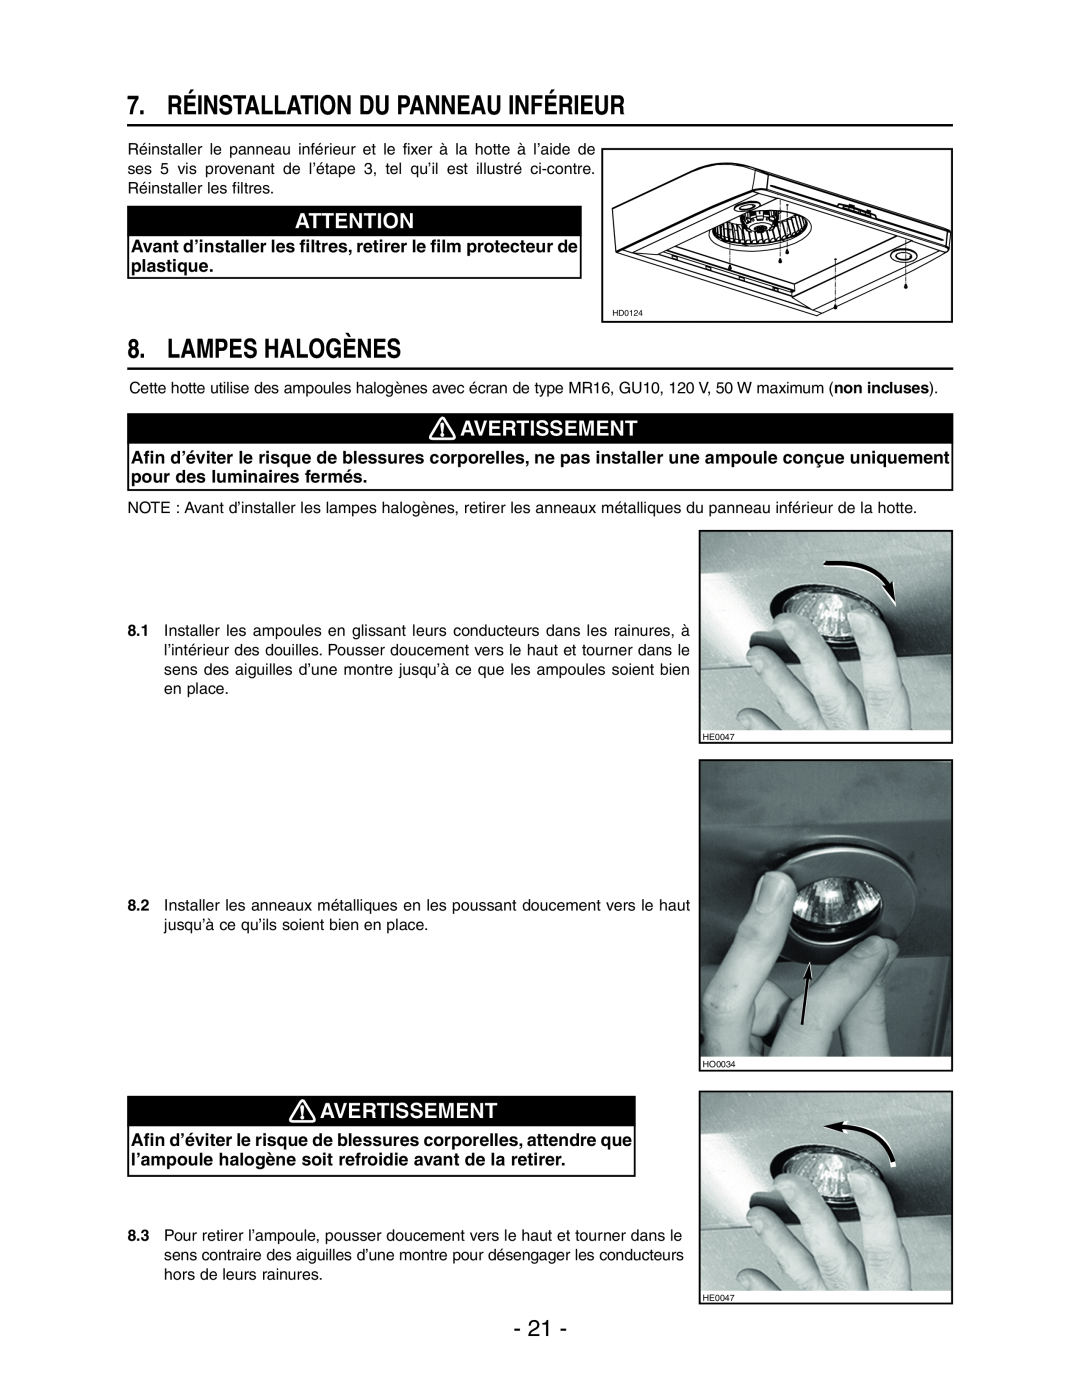 Broan E661 manual 7. RÉINSTALLATION DU PANNEAU INFÉRIEUR, Lampes Halogènes, Avertissement 